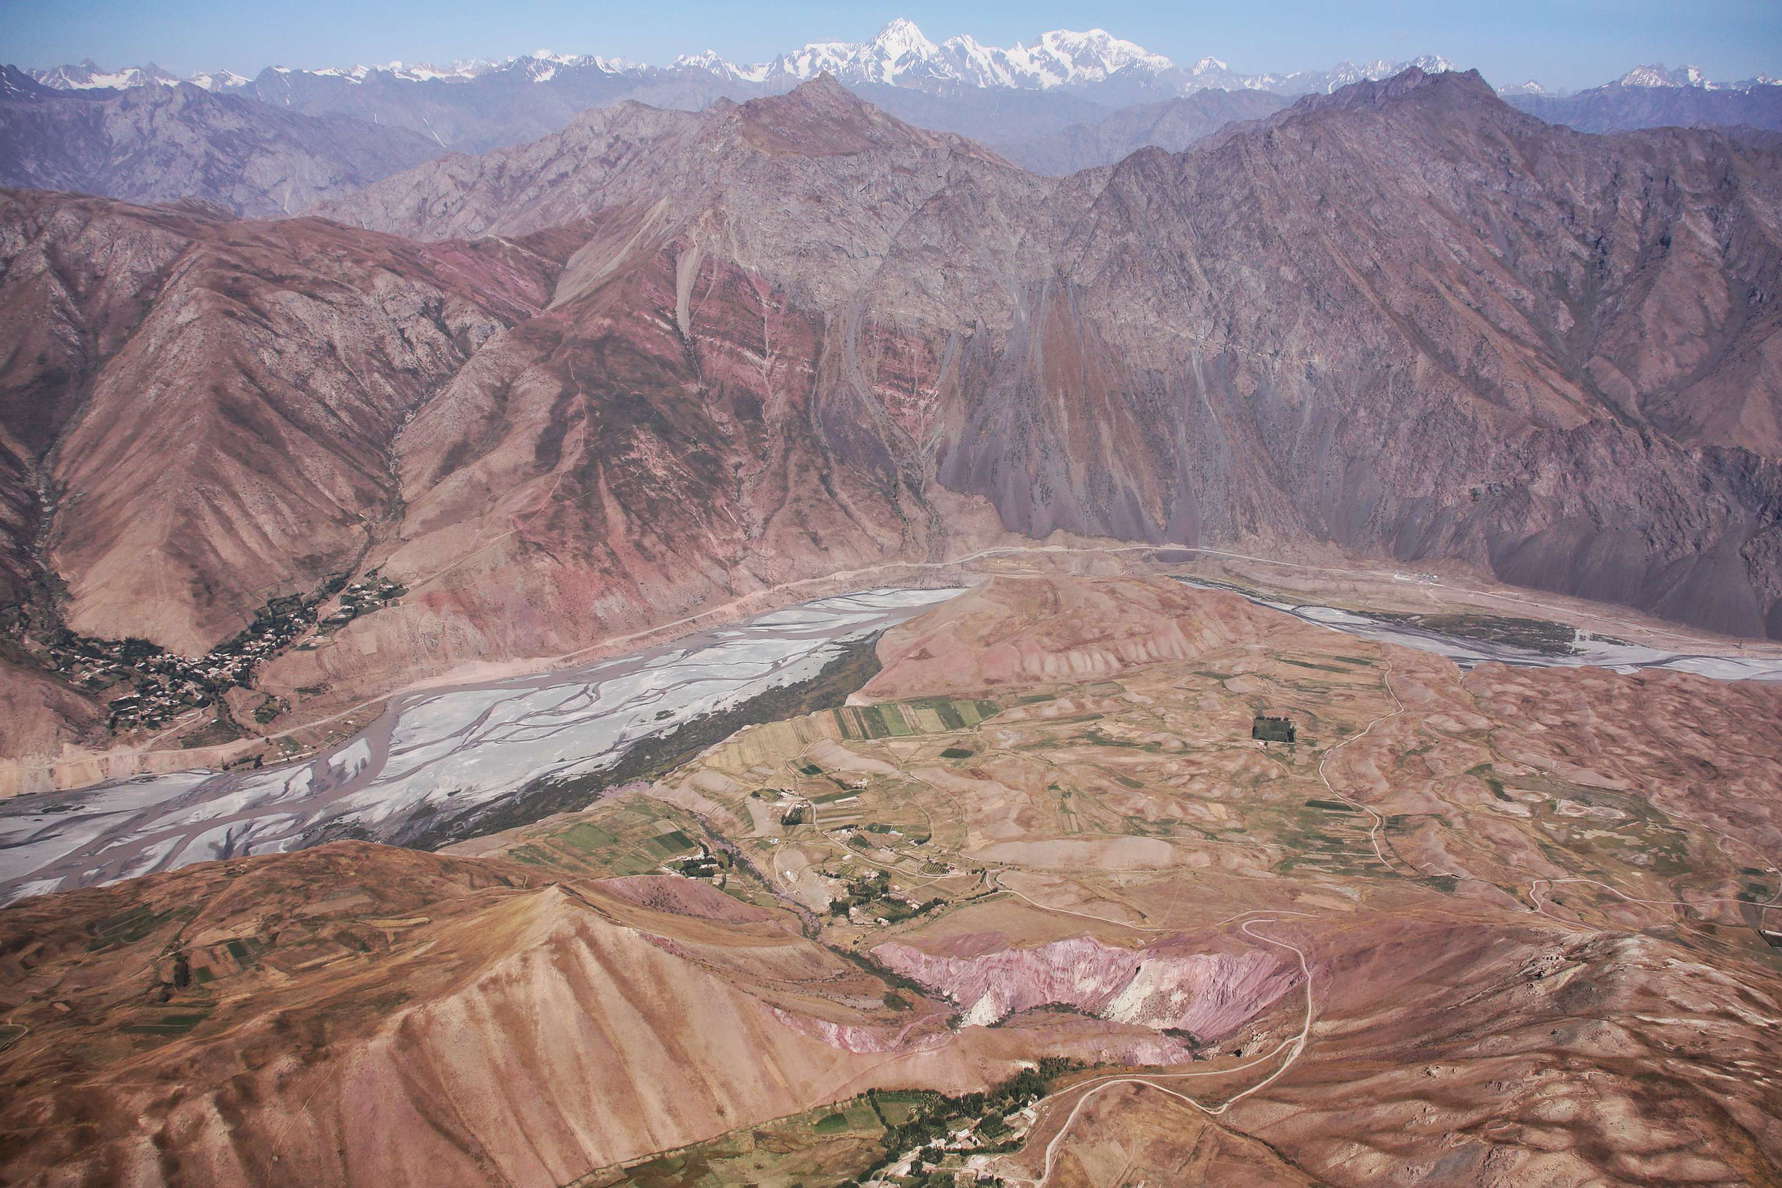 Surkhob Valley